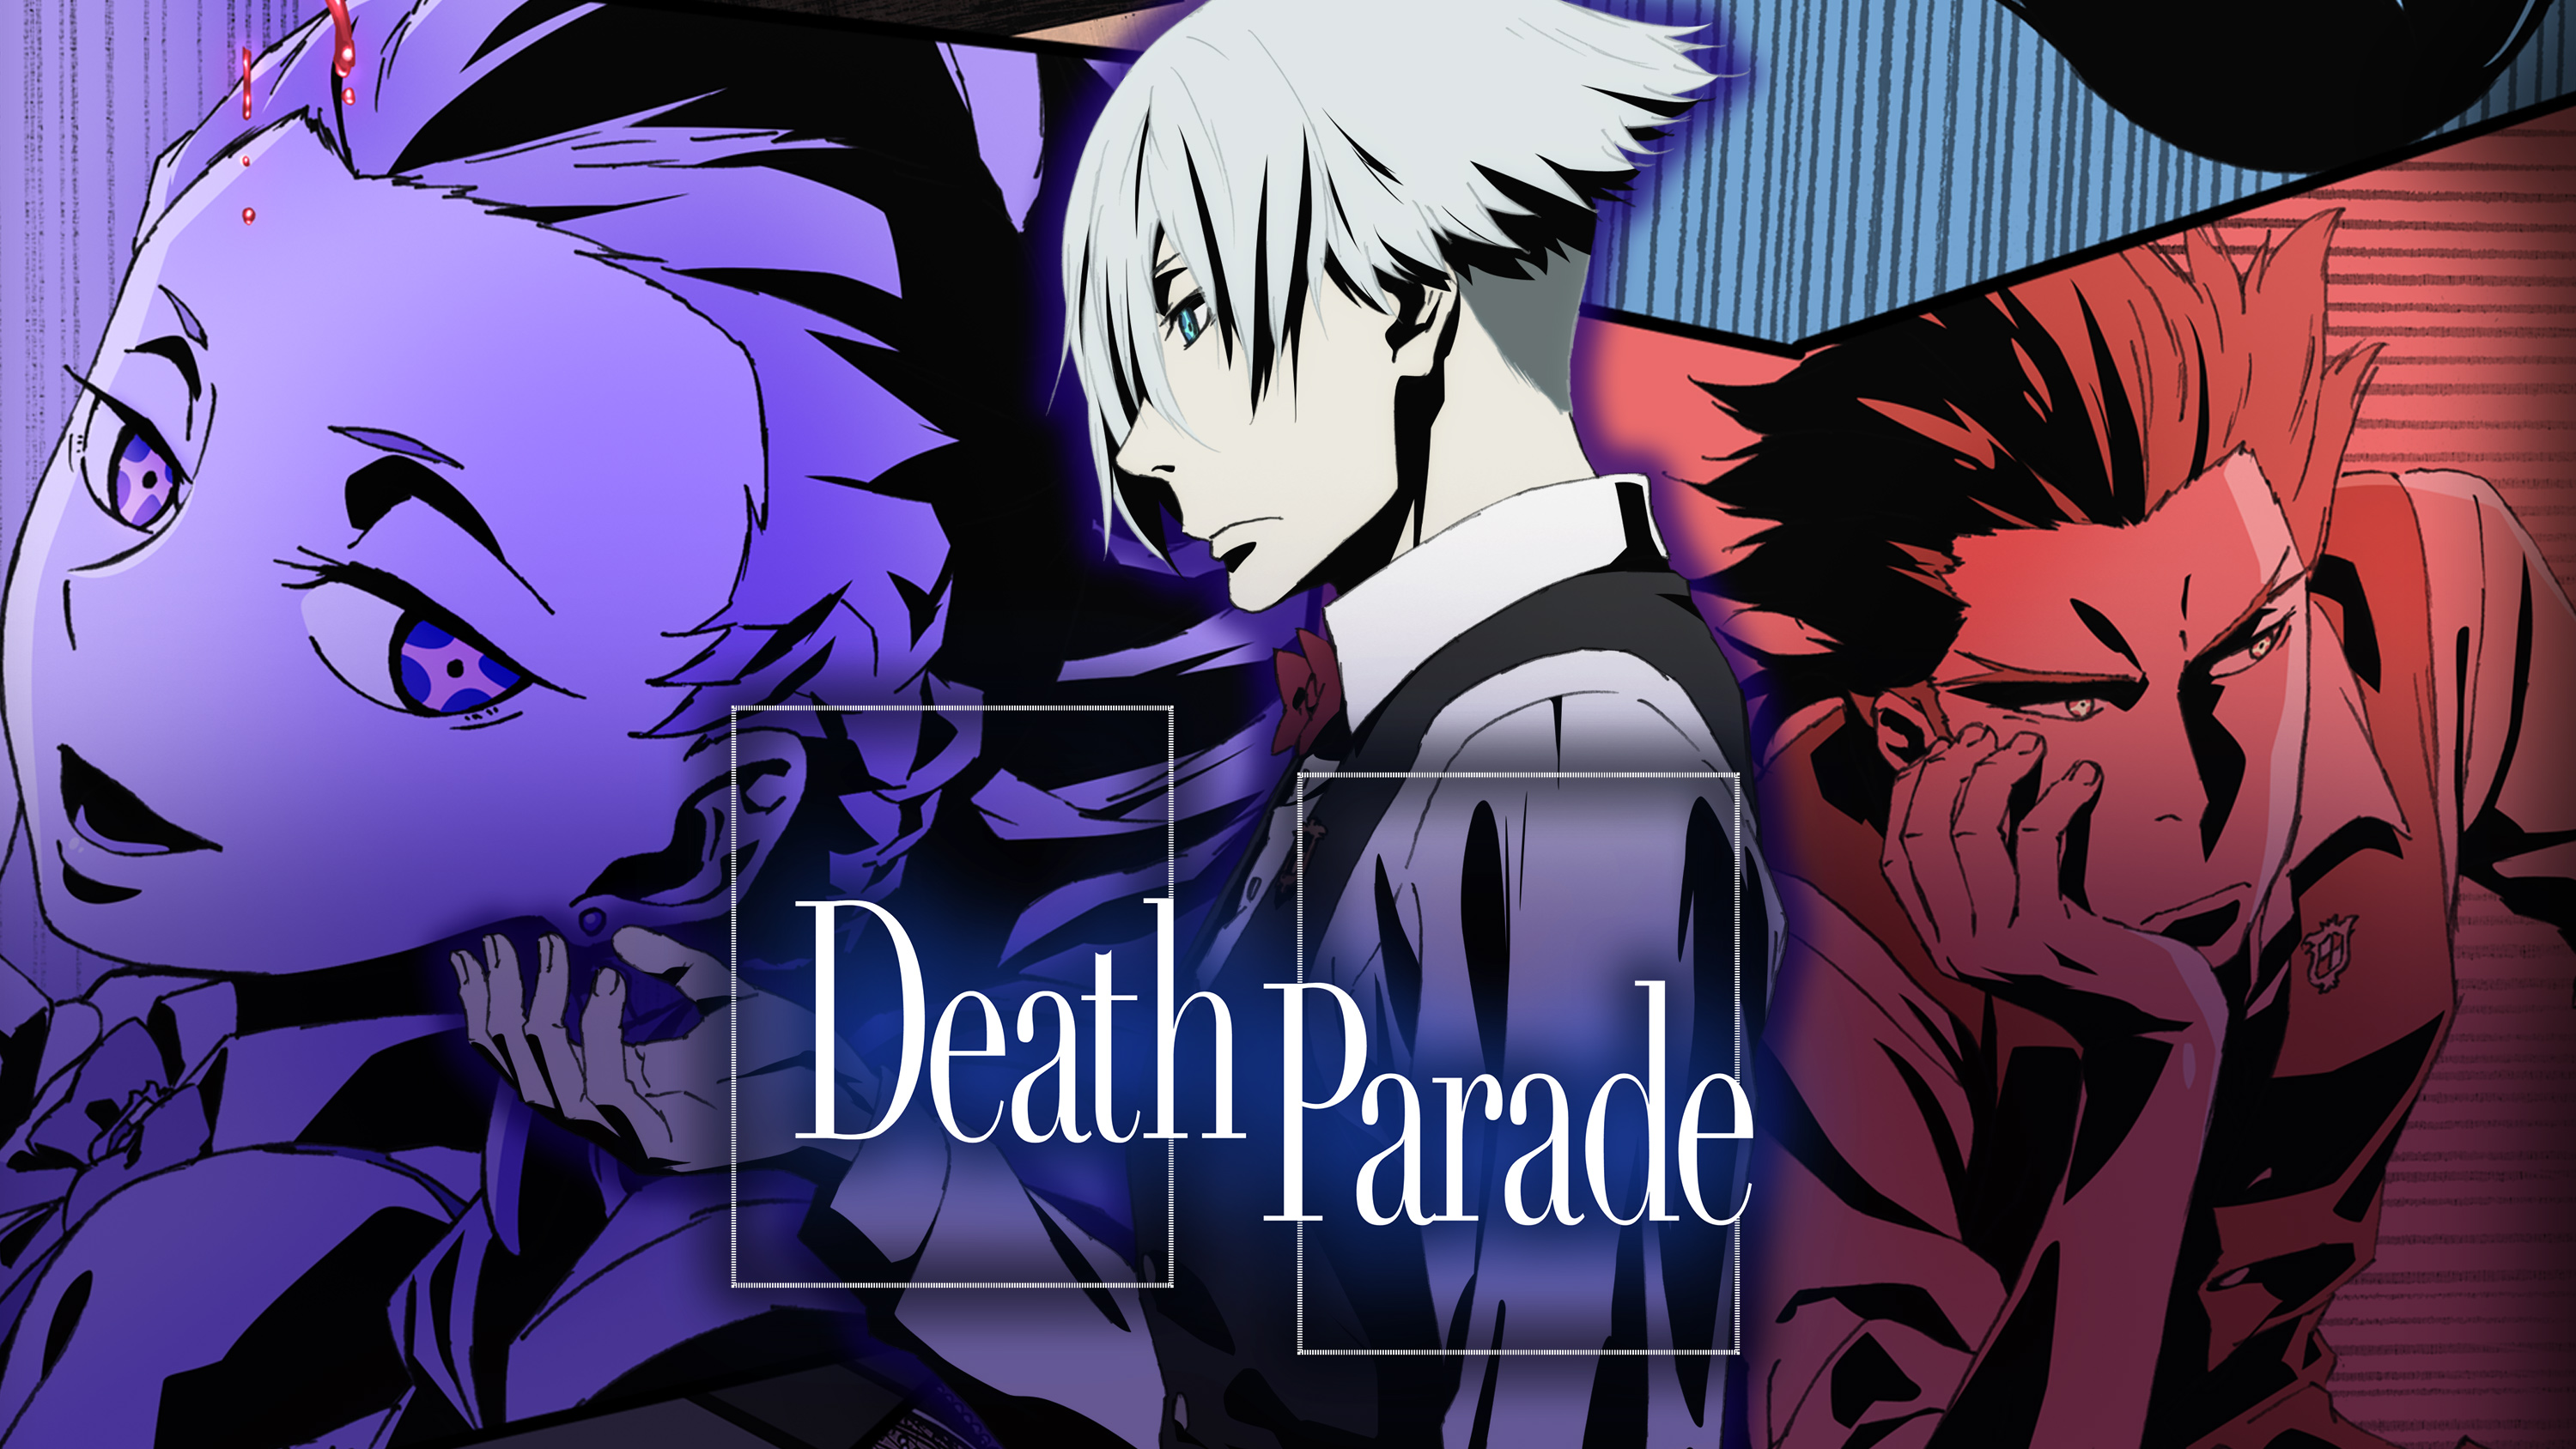 Death parade anime série de tv pintura diamante dos desenhos animados  chiyuki e decim cartaz ponto